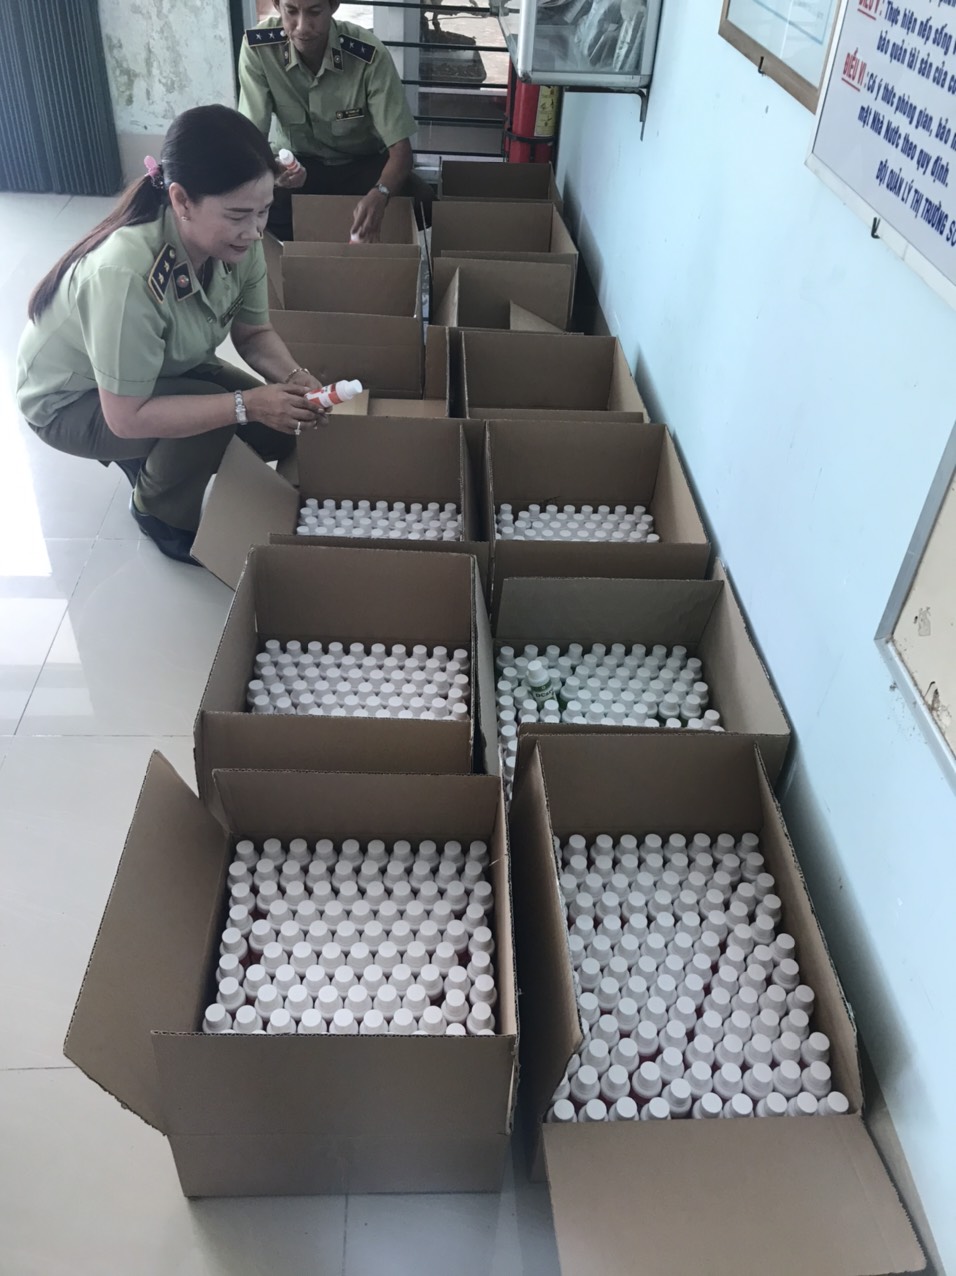 2.394 chai gel rửa tay khô diệt khuẩn, không xác định chủ sở hữu và không có hóa đơn, chứng từ.